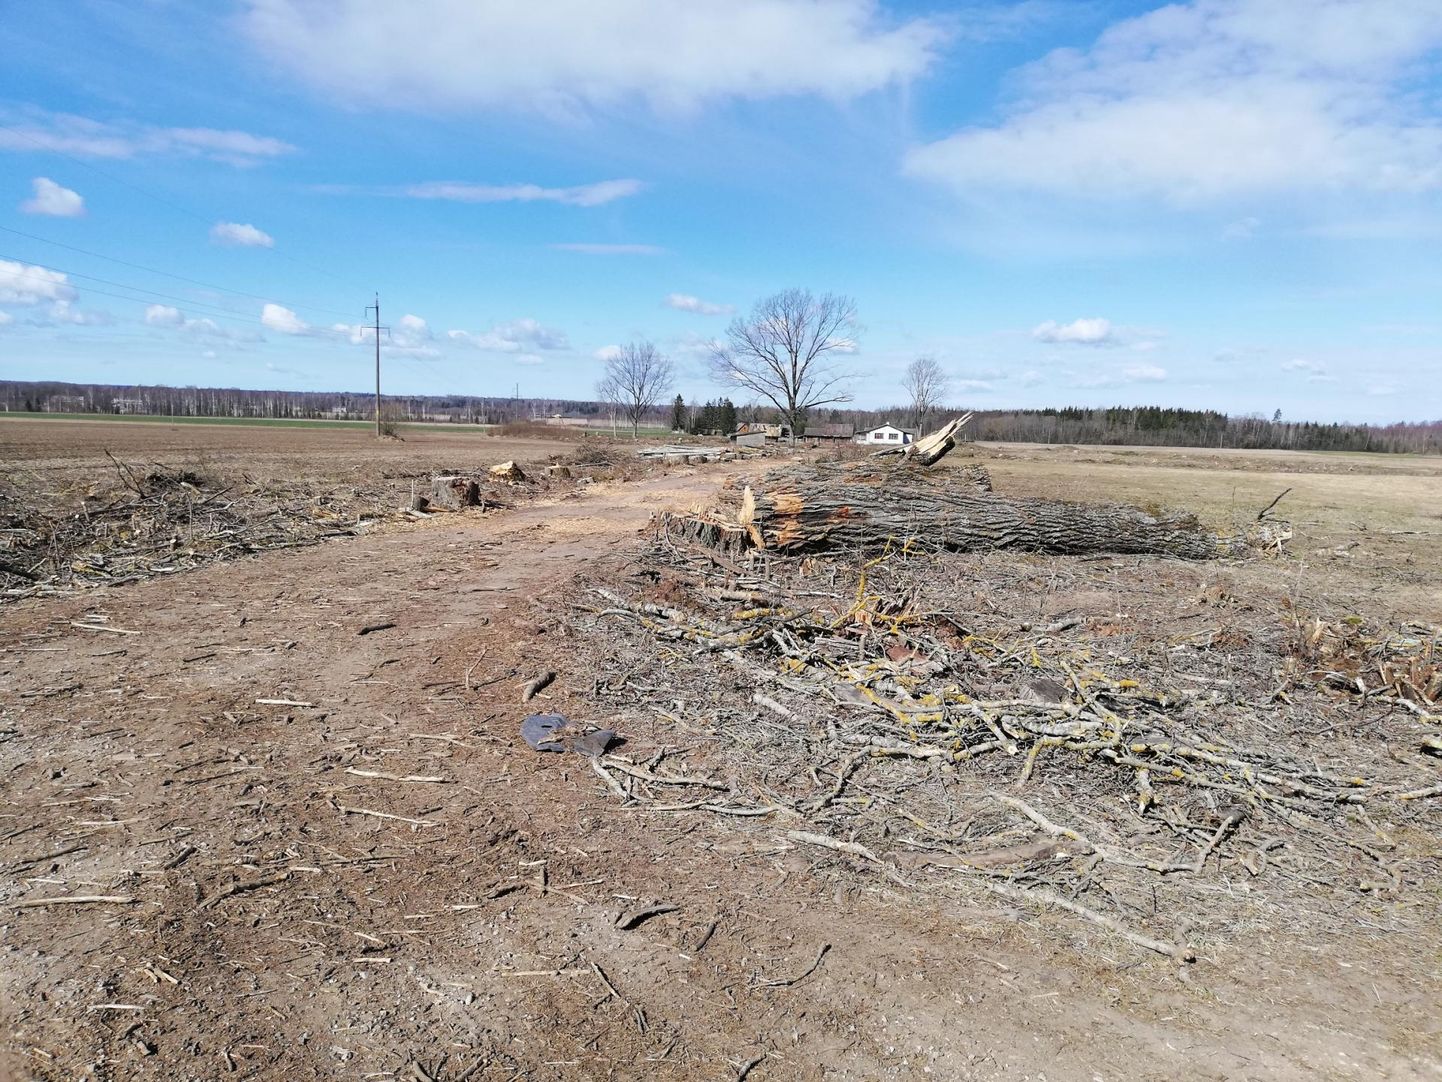 Vana puudeallee mahasaagimine Tõrva vallas Leebiku külas põhjustas loodusesõprades pettumust. Puud asusid aga eramaal ja nende raiumiseks oli luba olemas.